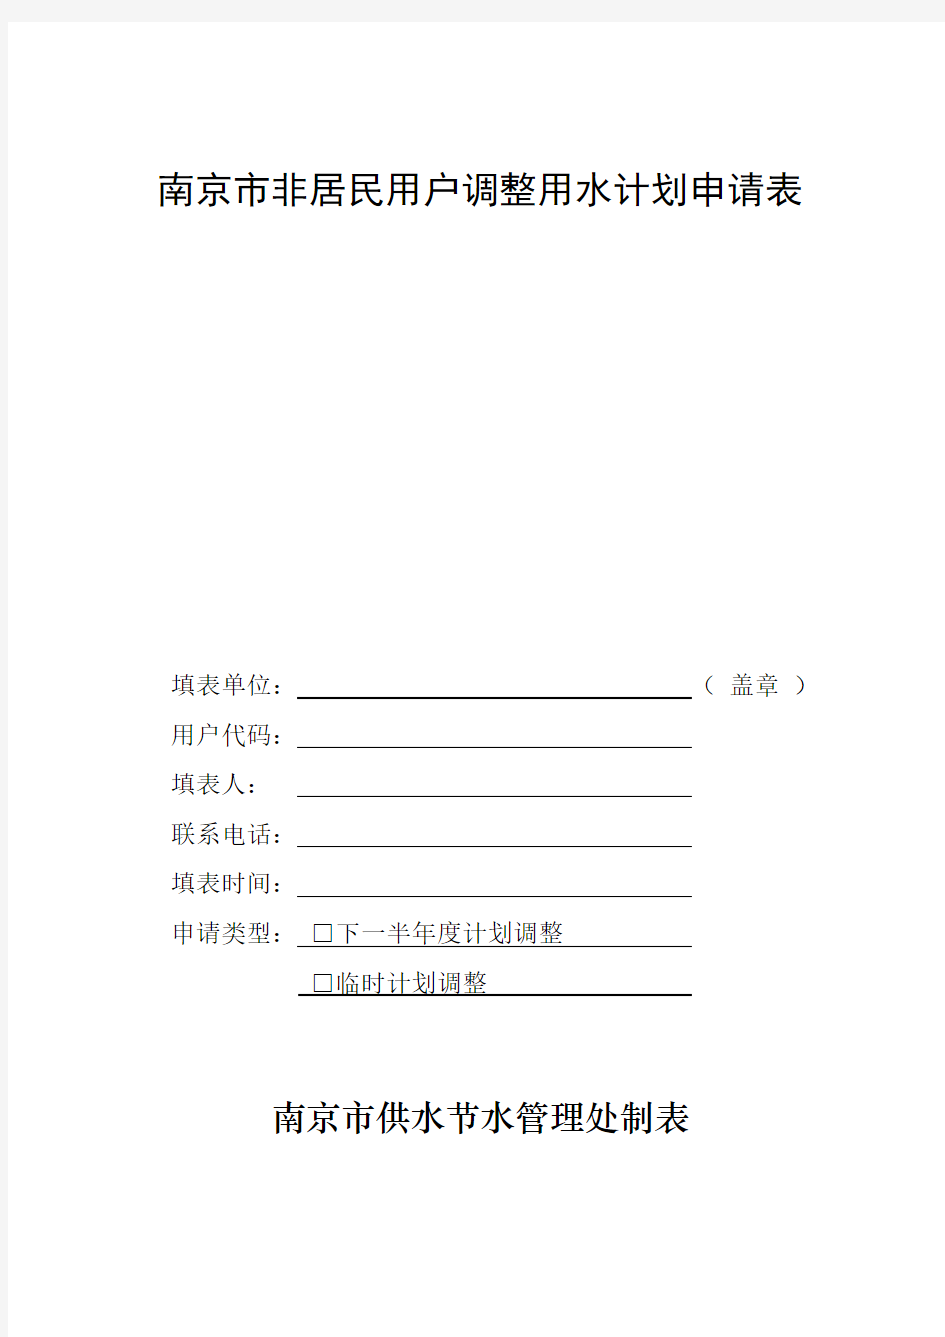 南京市非居民调整用水申请表